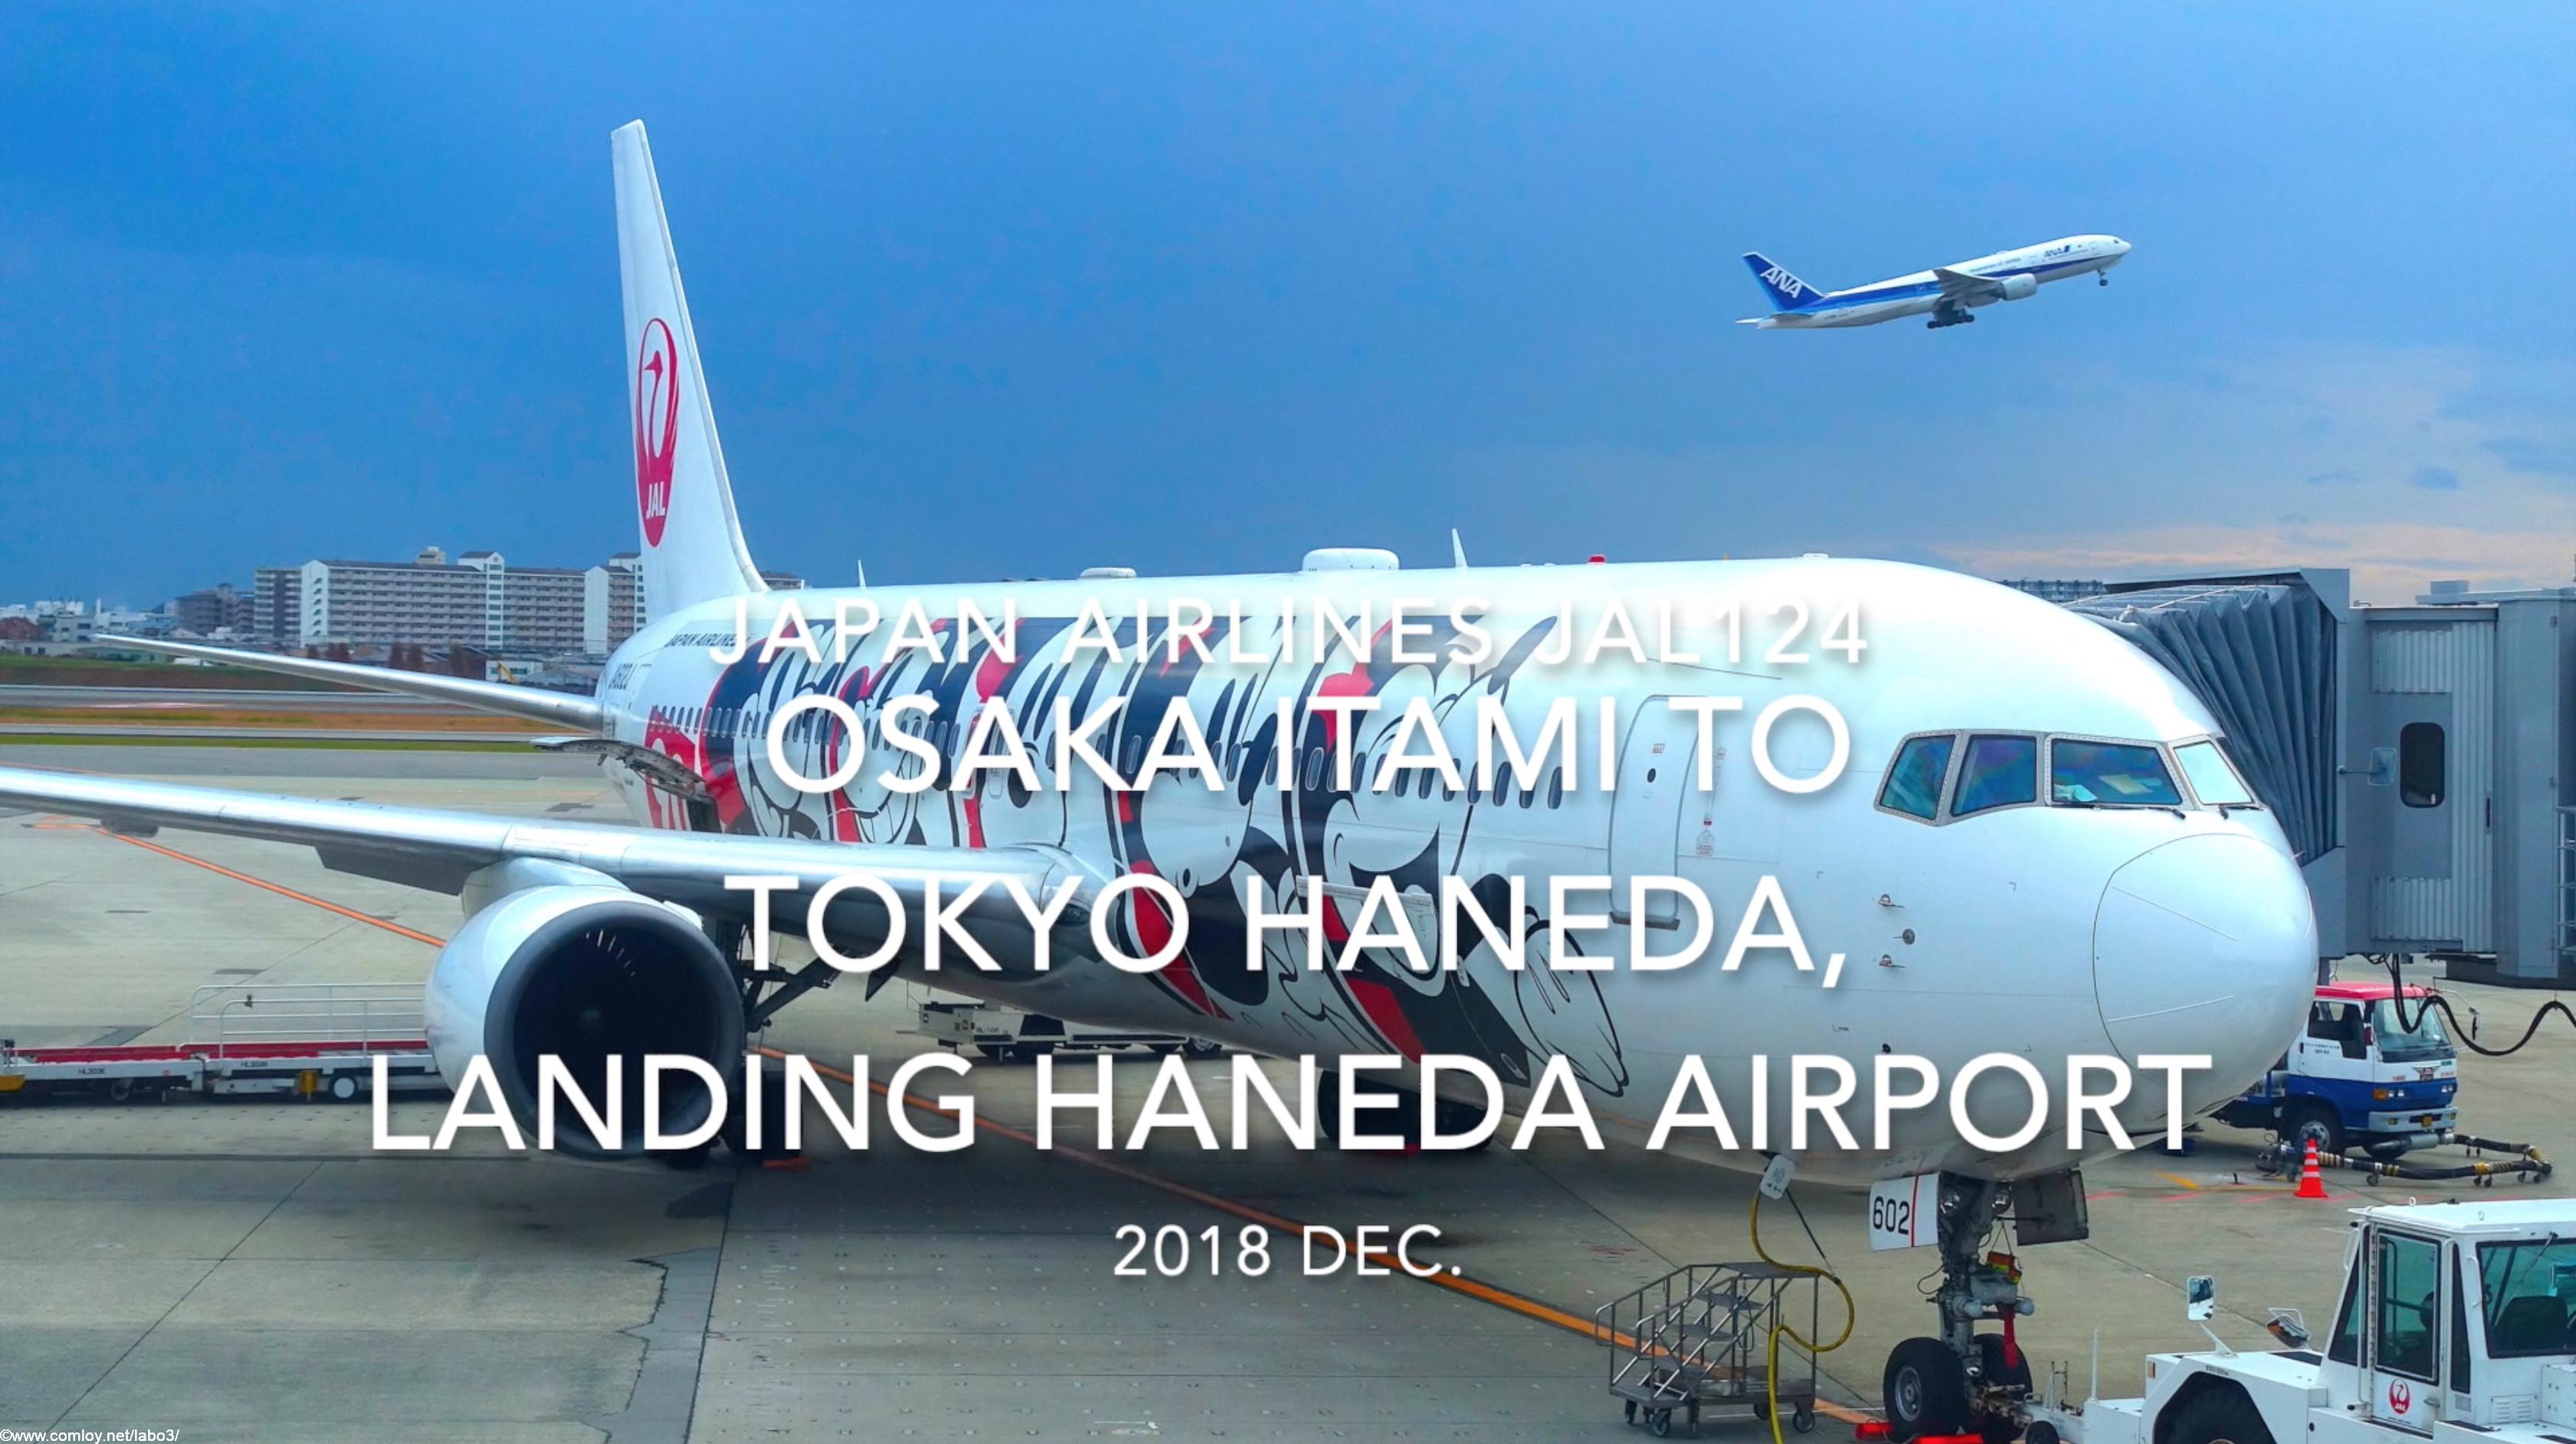 【機内から離着陸映像】2018 Dec. JAPAN Airlines JAL124 OSAKA ITAMI to TOKYO HANEDA, Landing HANEDA Airport 日本航空 伊丹 - 羽田 羽田空港着陸